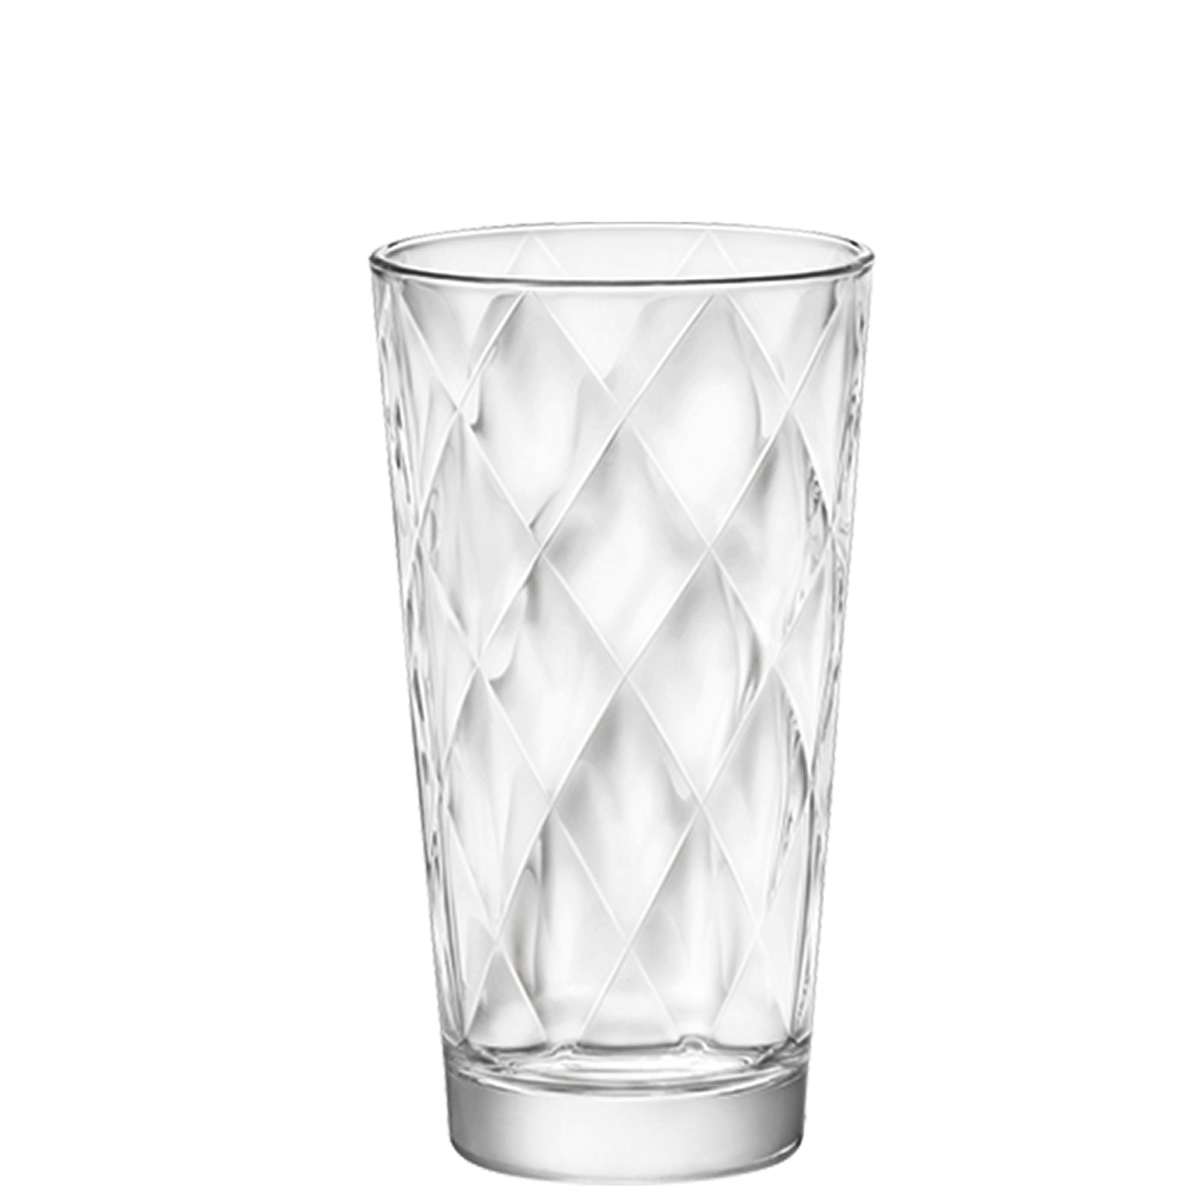 Longdrink glass Kaleido, Bormioli Rocco - 370ml (1 pc.)